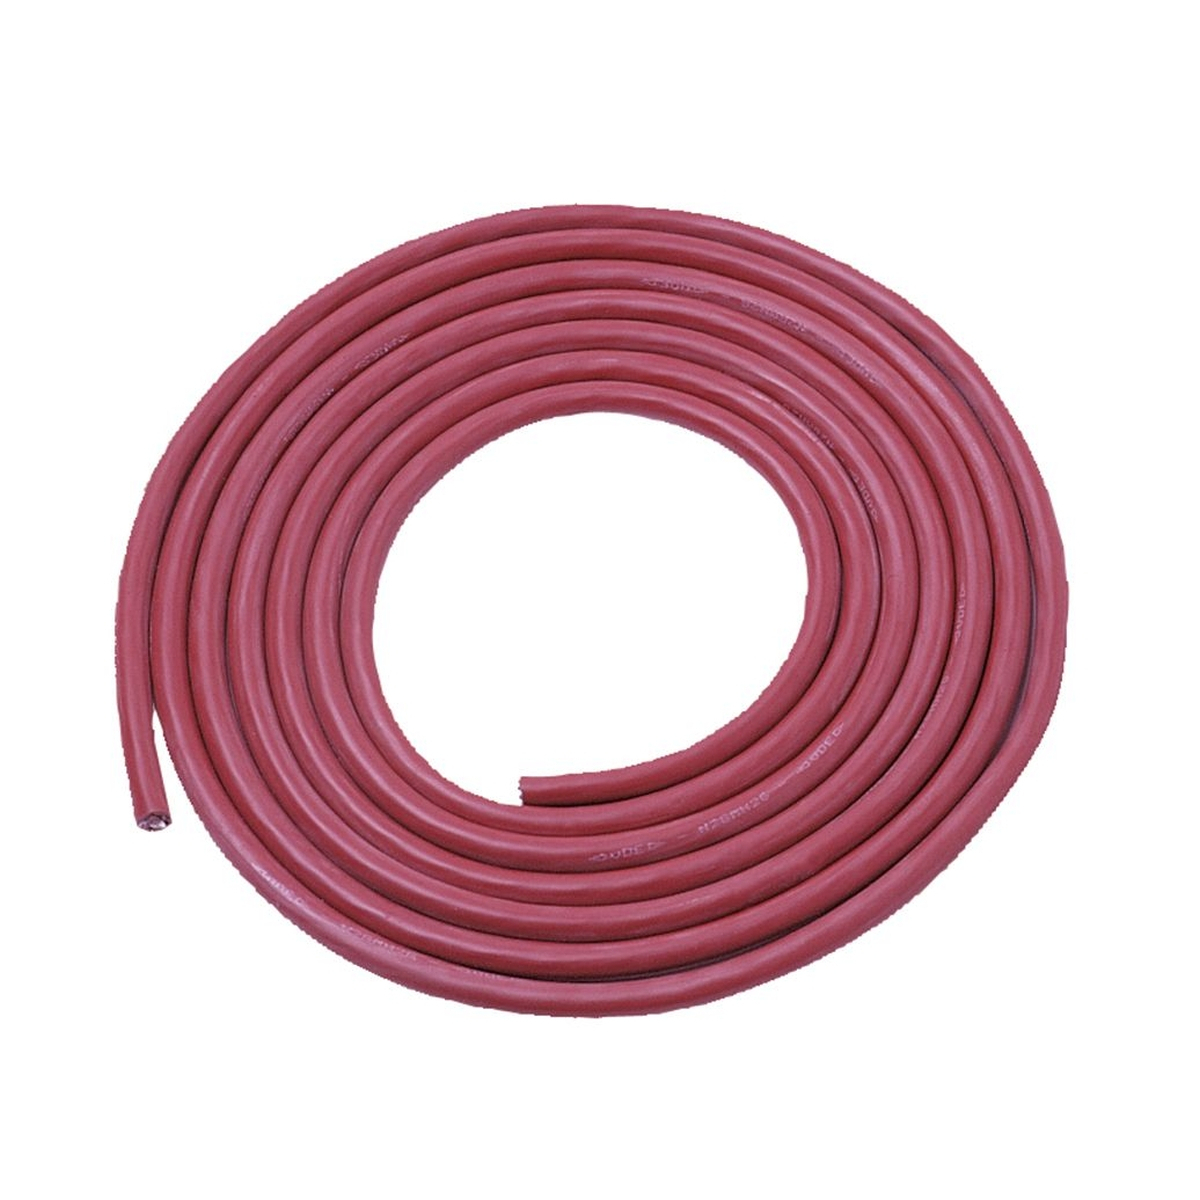 LANIT PLAST Silikonový kabel 1,5 mm / 3 m pro světlo / ovladač (13367)